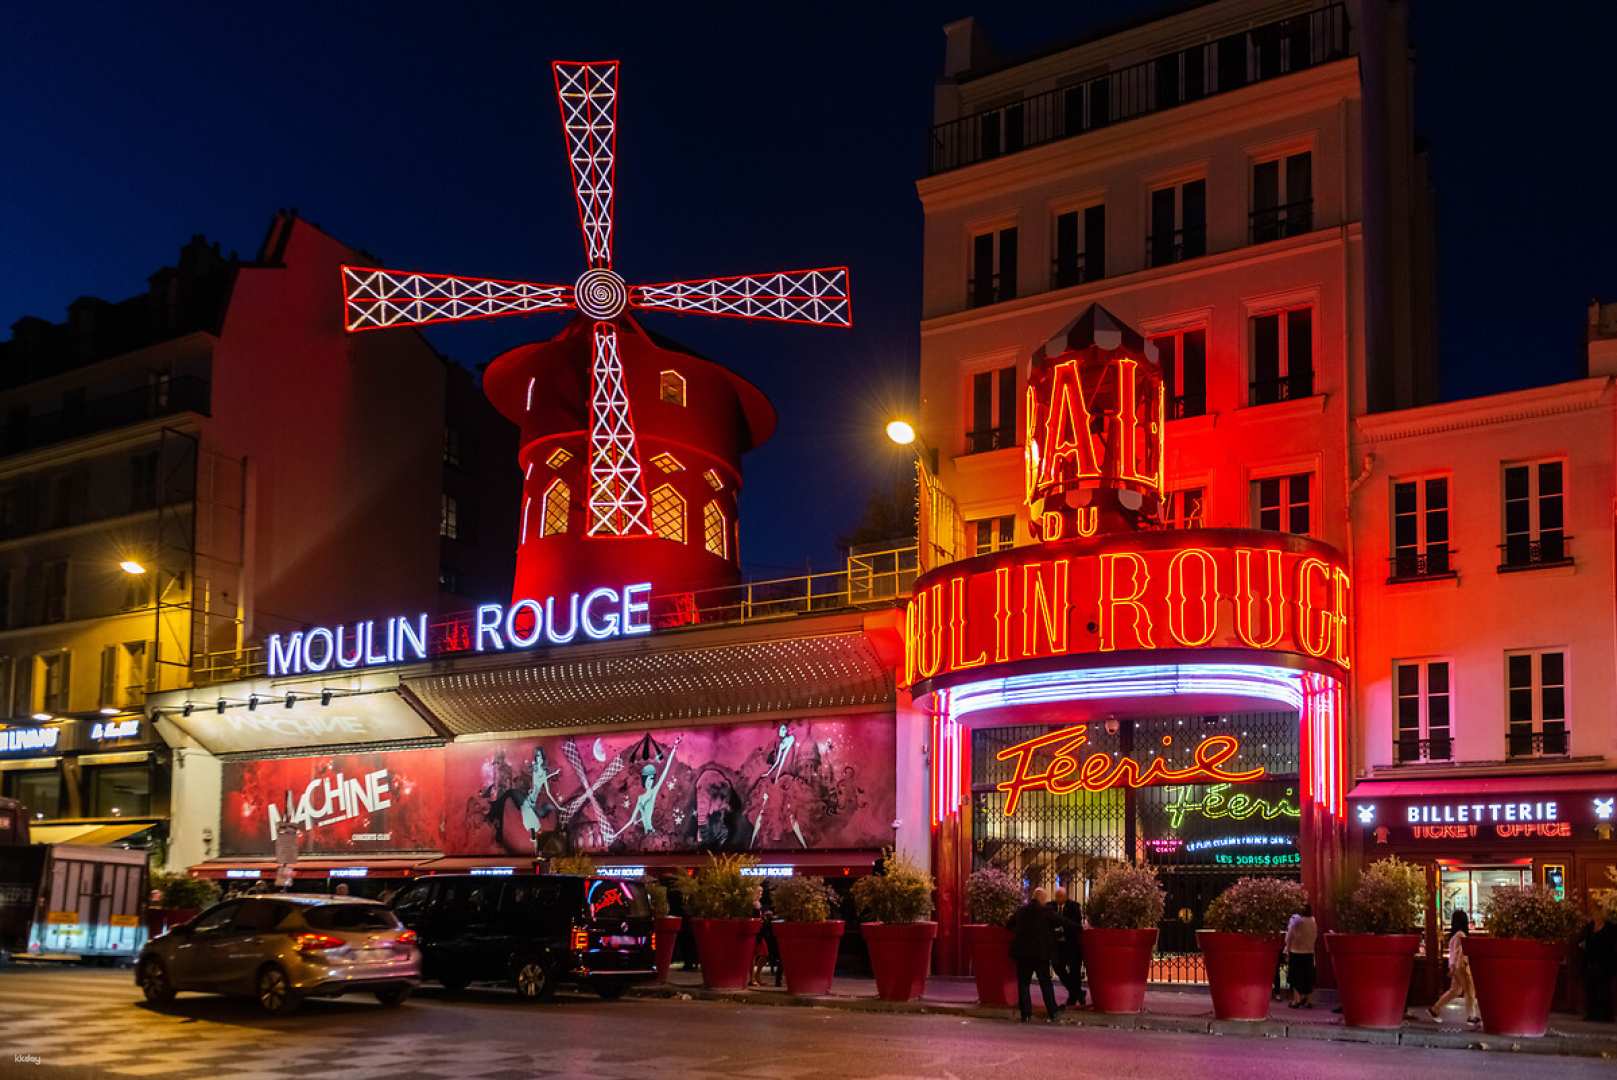 法國-巴黎紅磨坊歌舞晚宴秀預約| 贈巴黎城市觀光巴士